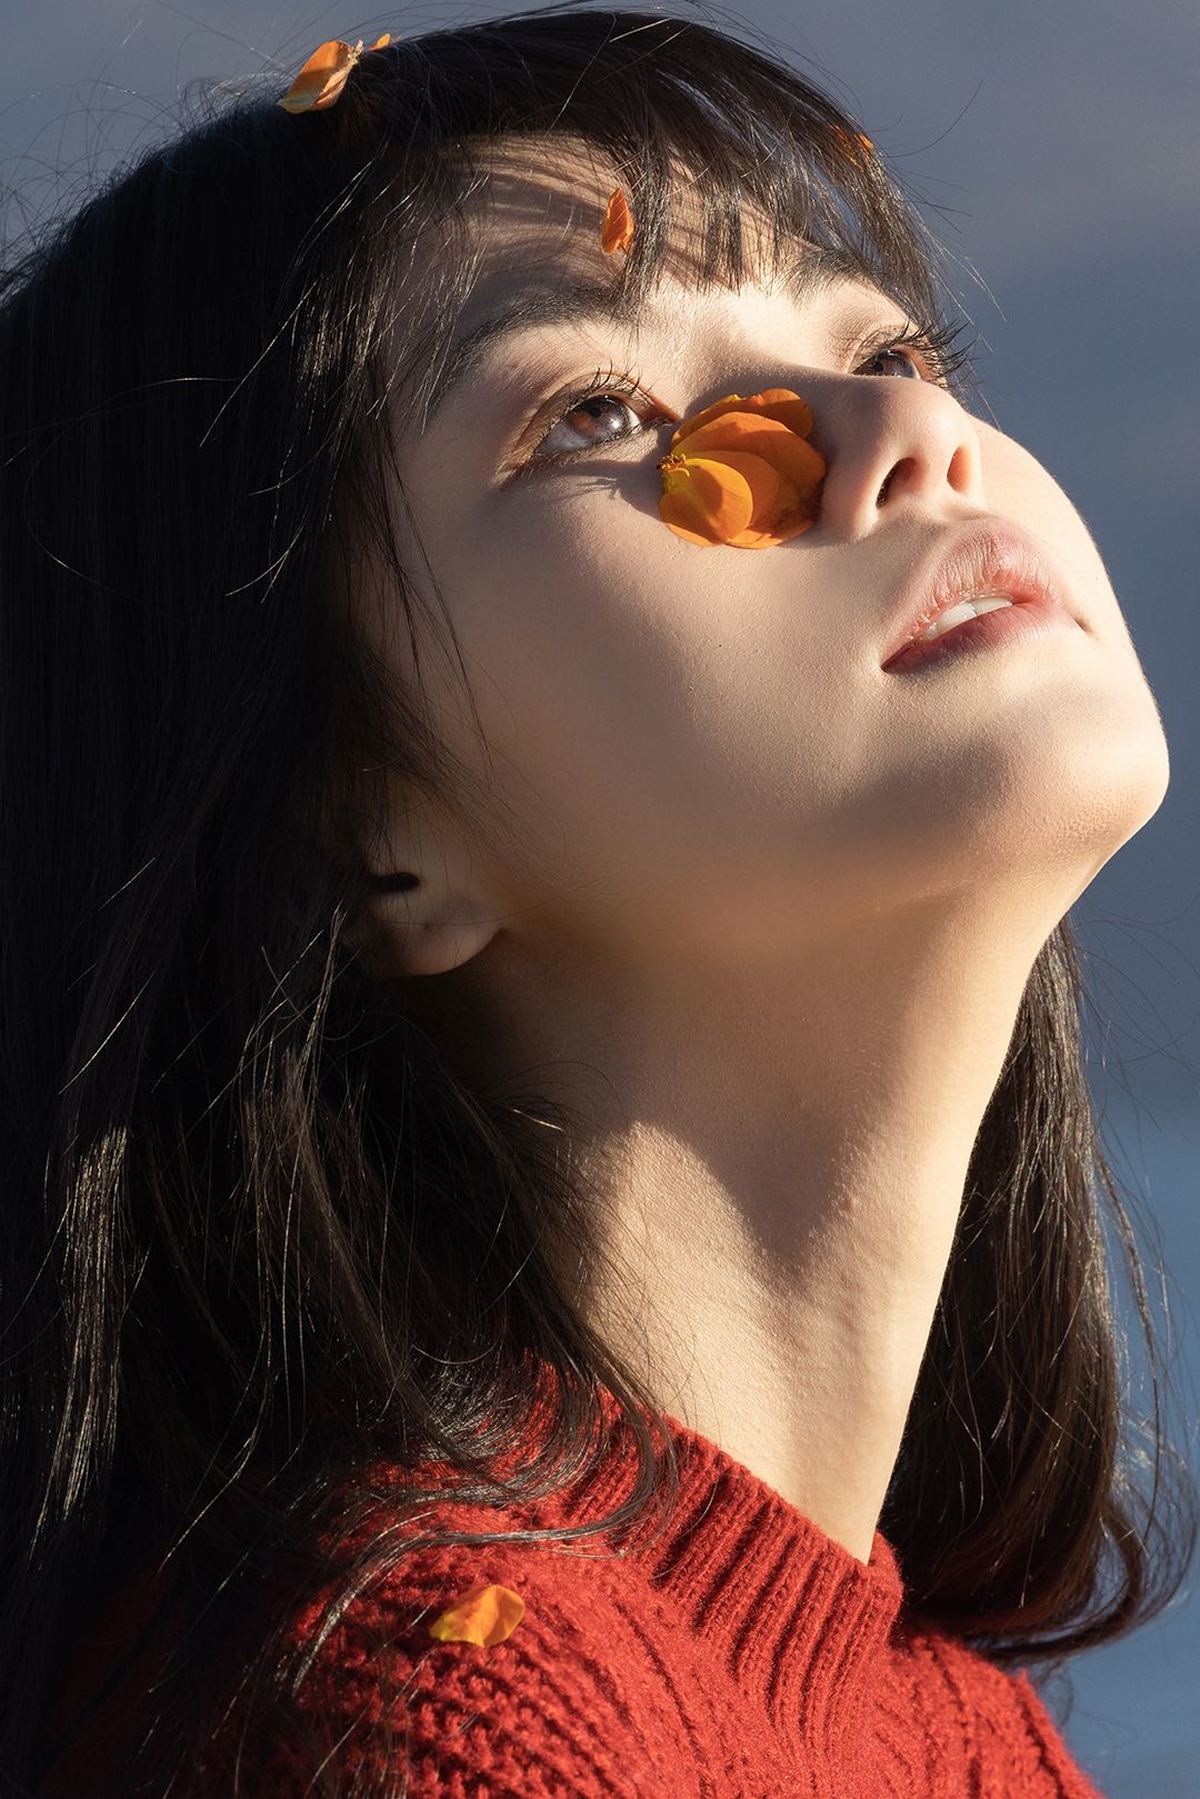 一个戴太阳镜和毛衣的年轻女子抬头望向天空